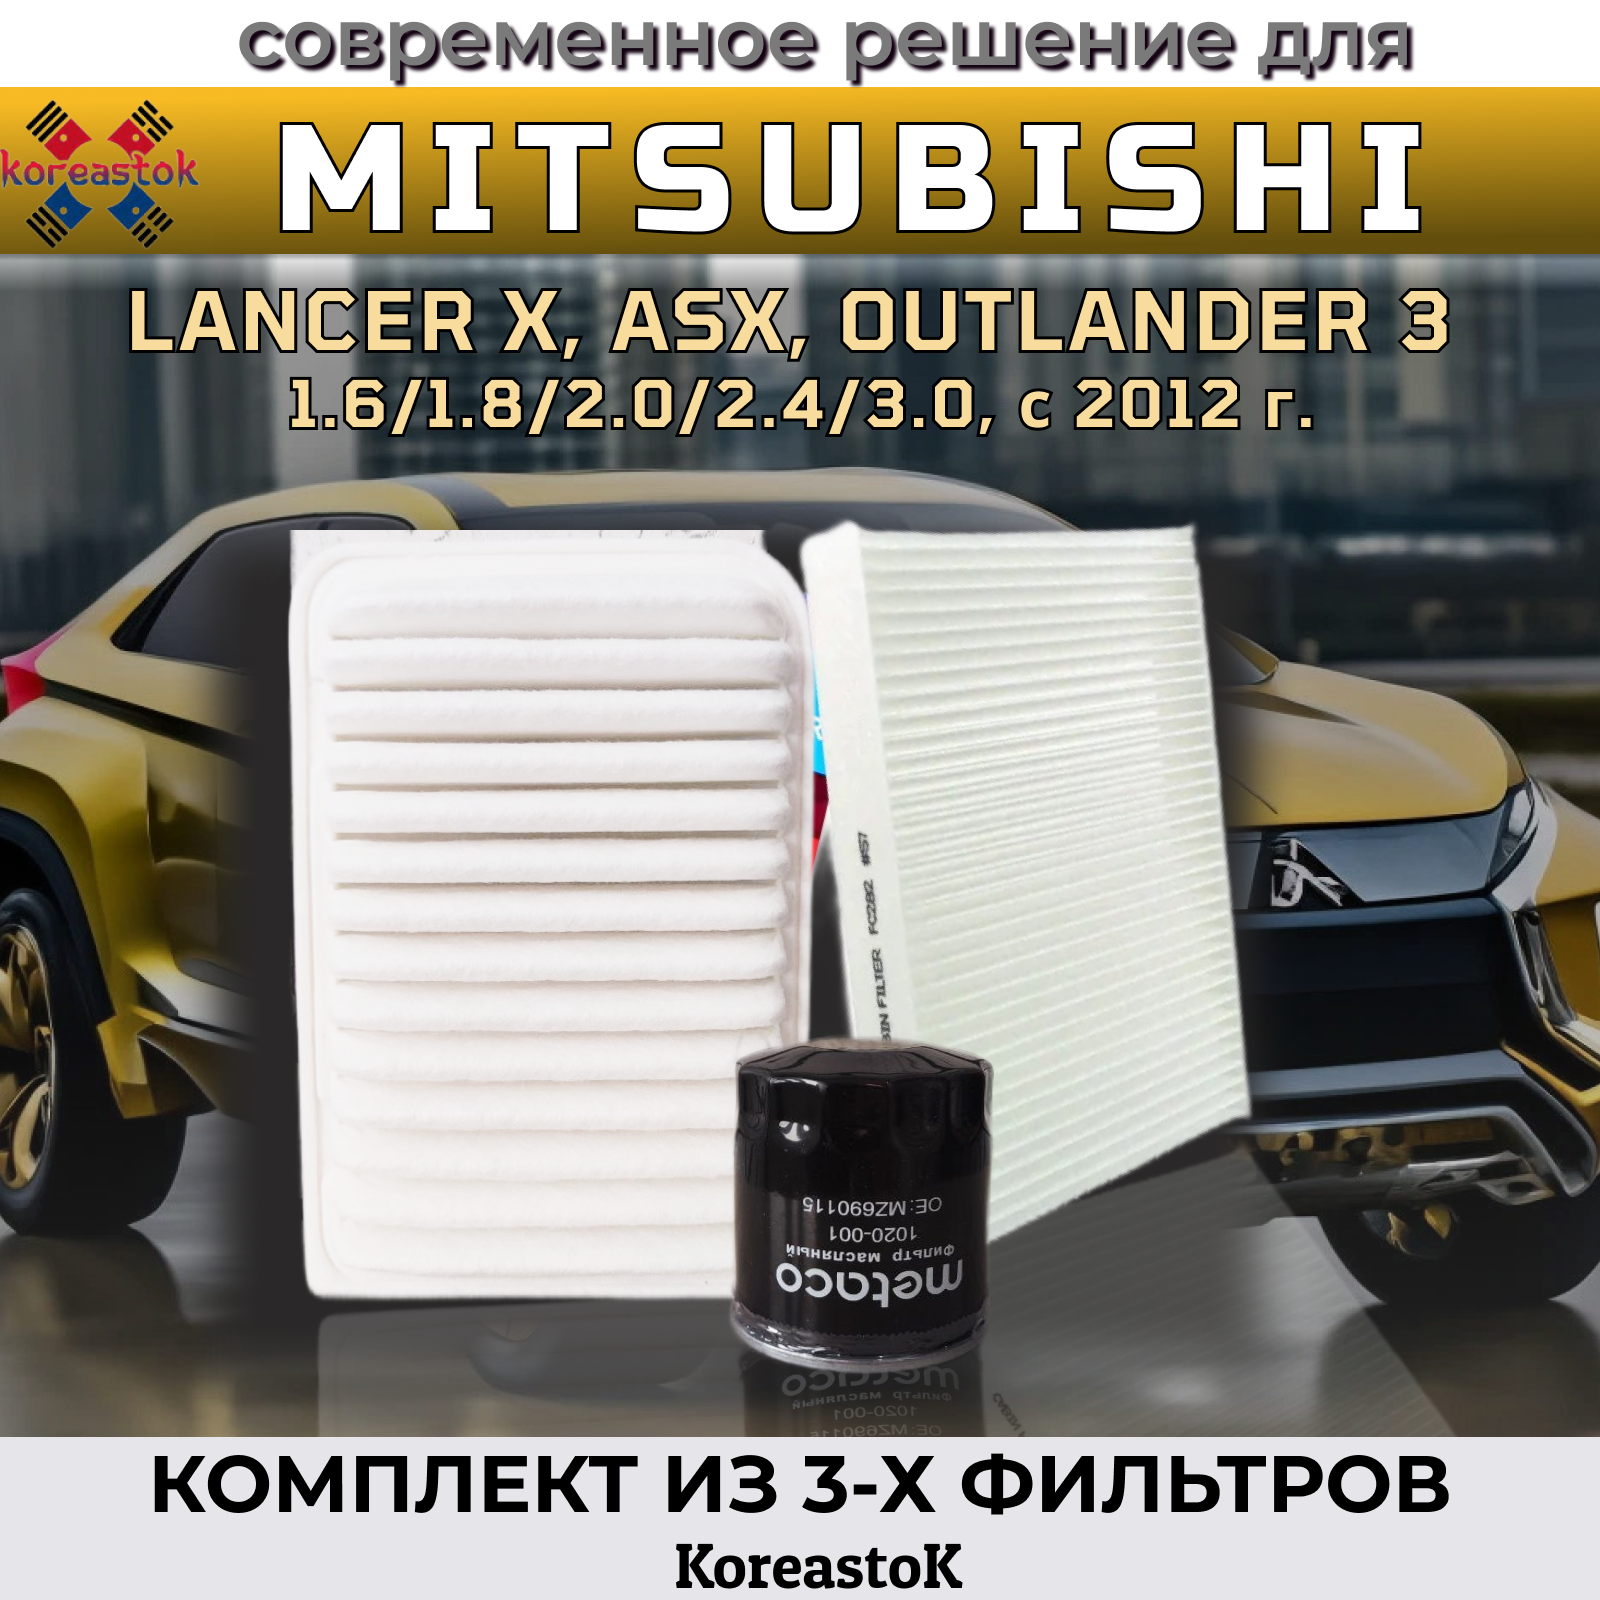 Комплект фильтров для техобслуживания Mitsubishi Lancer, Outlander с 2012г. в.